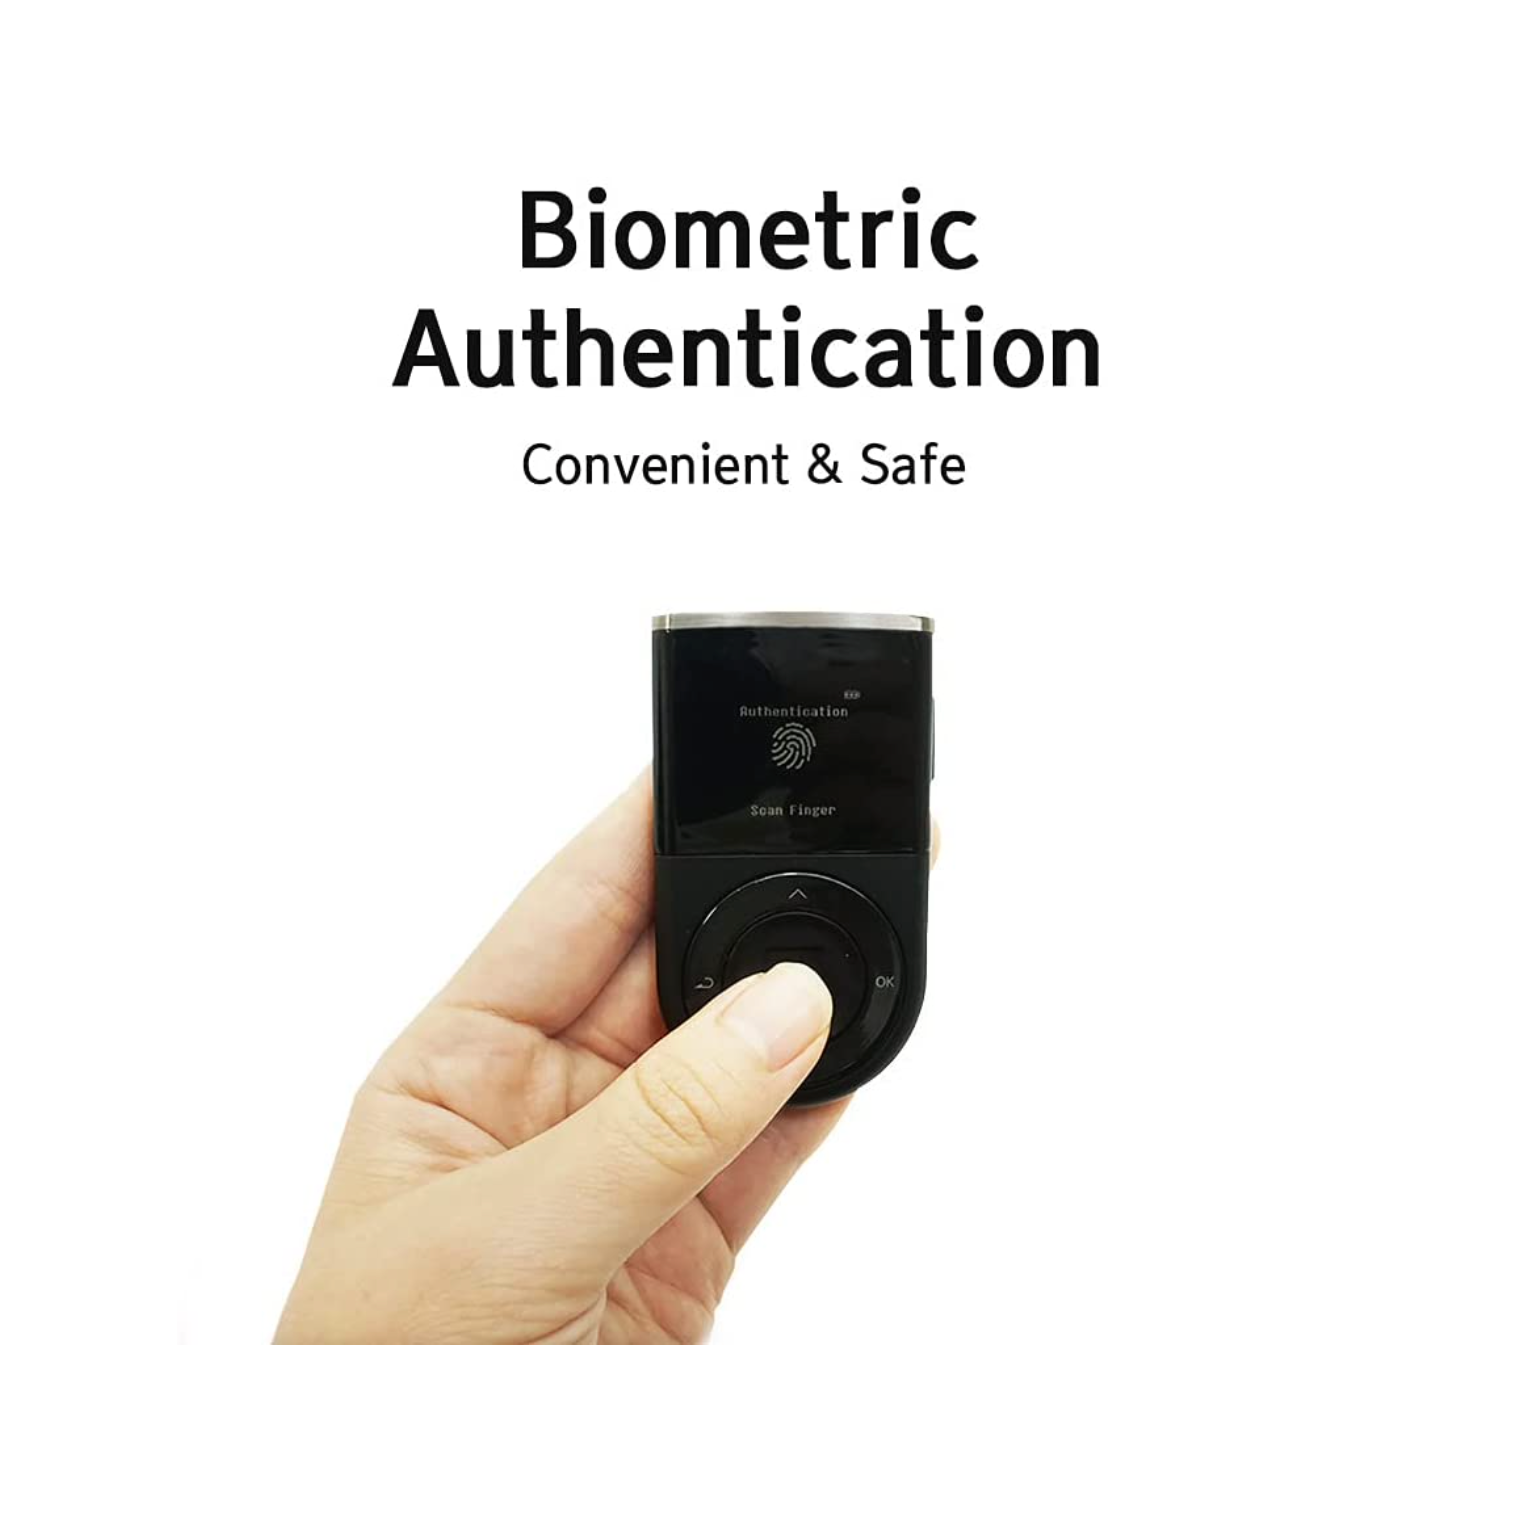 D'Cent Biometric Wallet